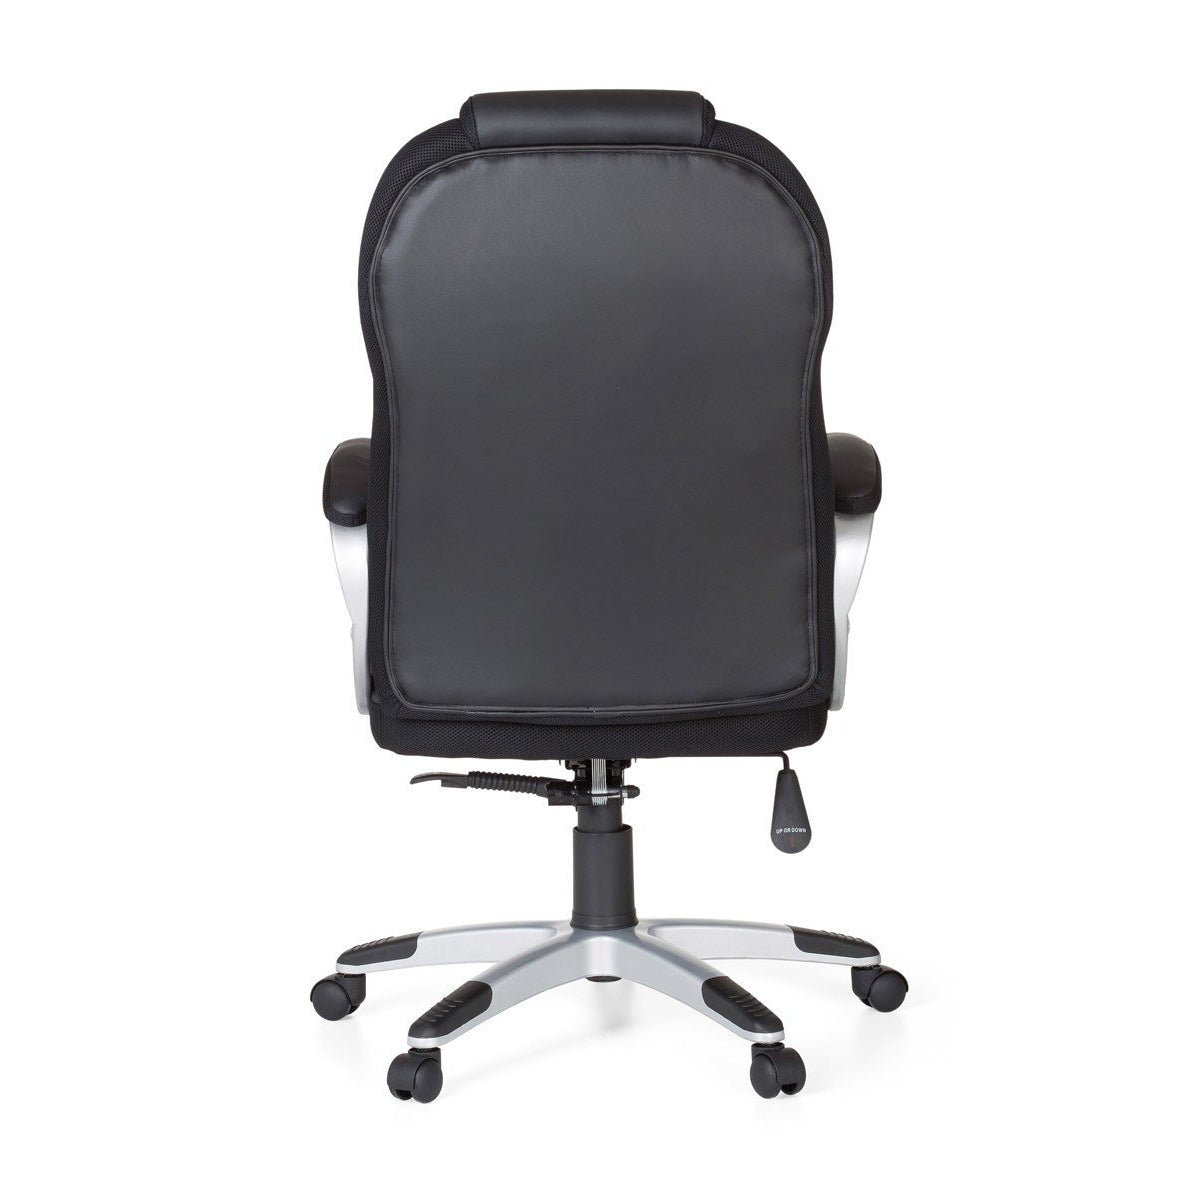 Chaise de bureau Nancy's Caton - Fauteuil de direction - Chaise pivotante - Chaise de bureau ergonomique - Réglable - Noir